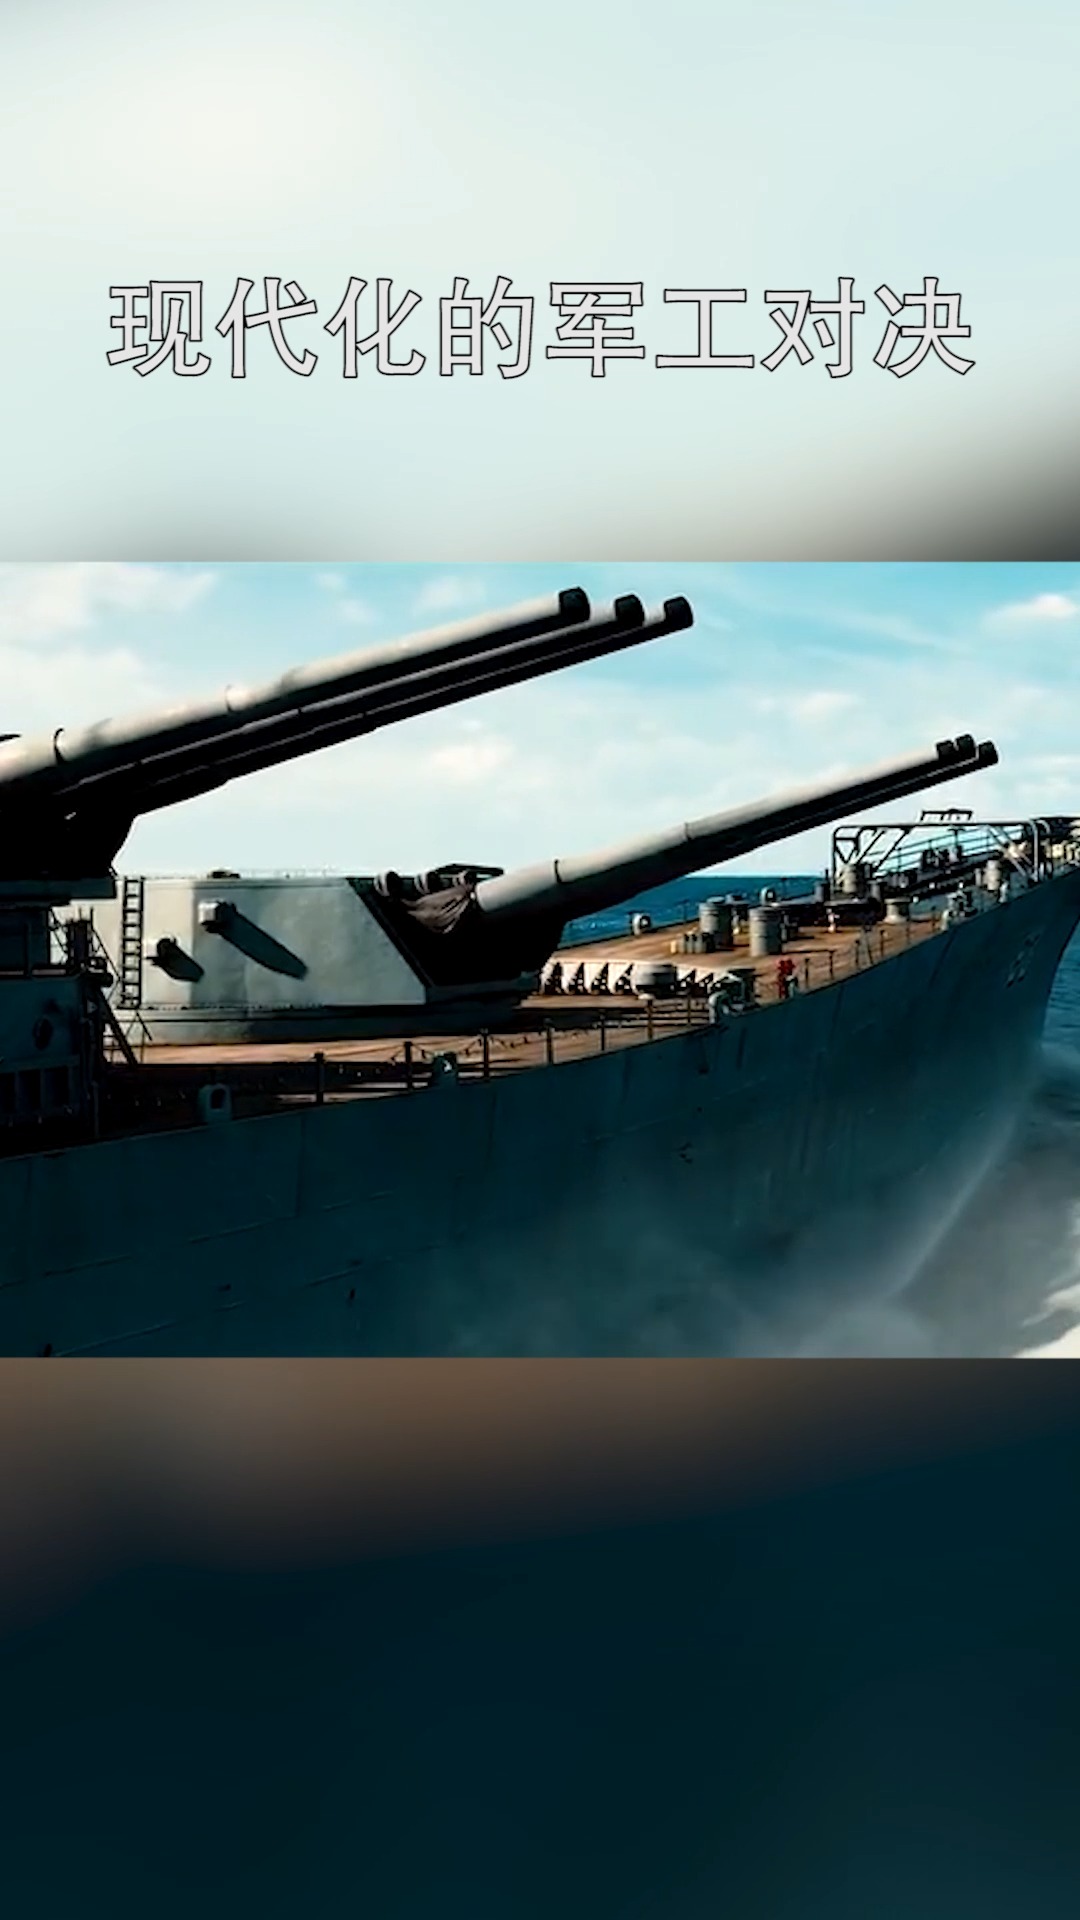 超级战舰密苏里号导弹图片